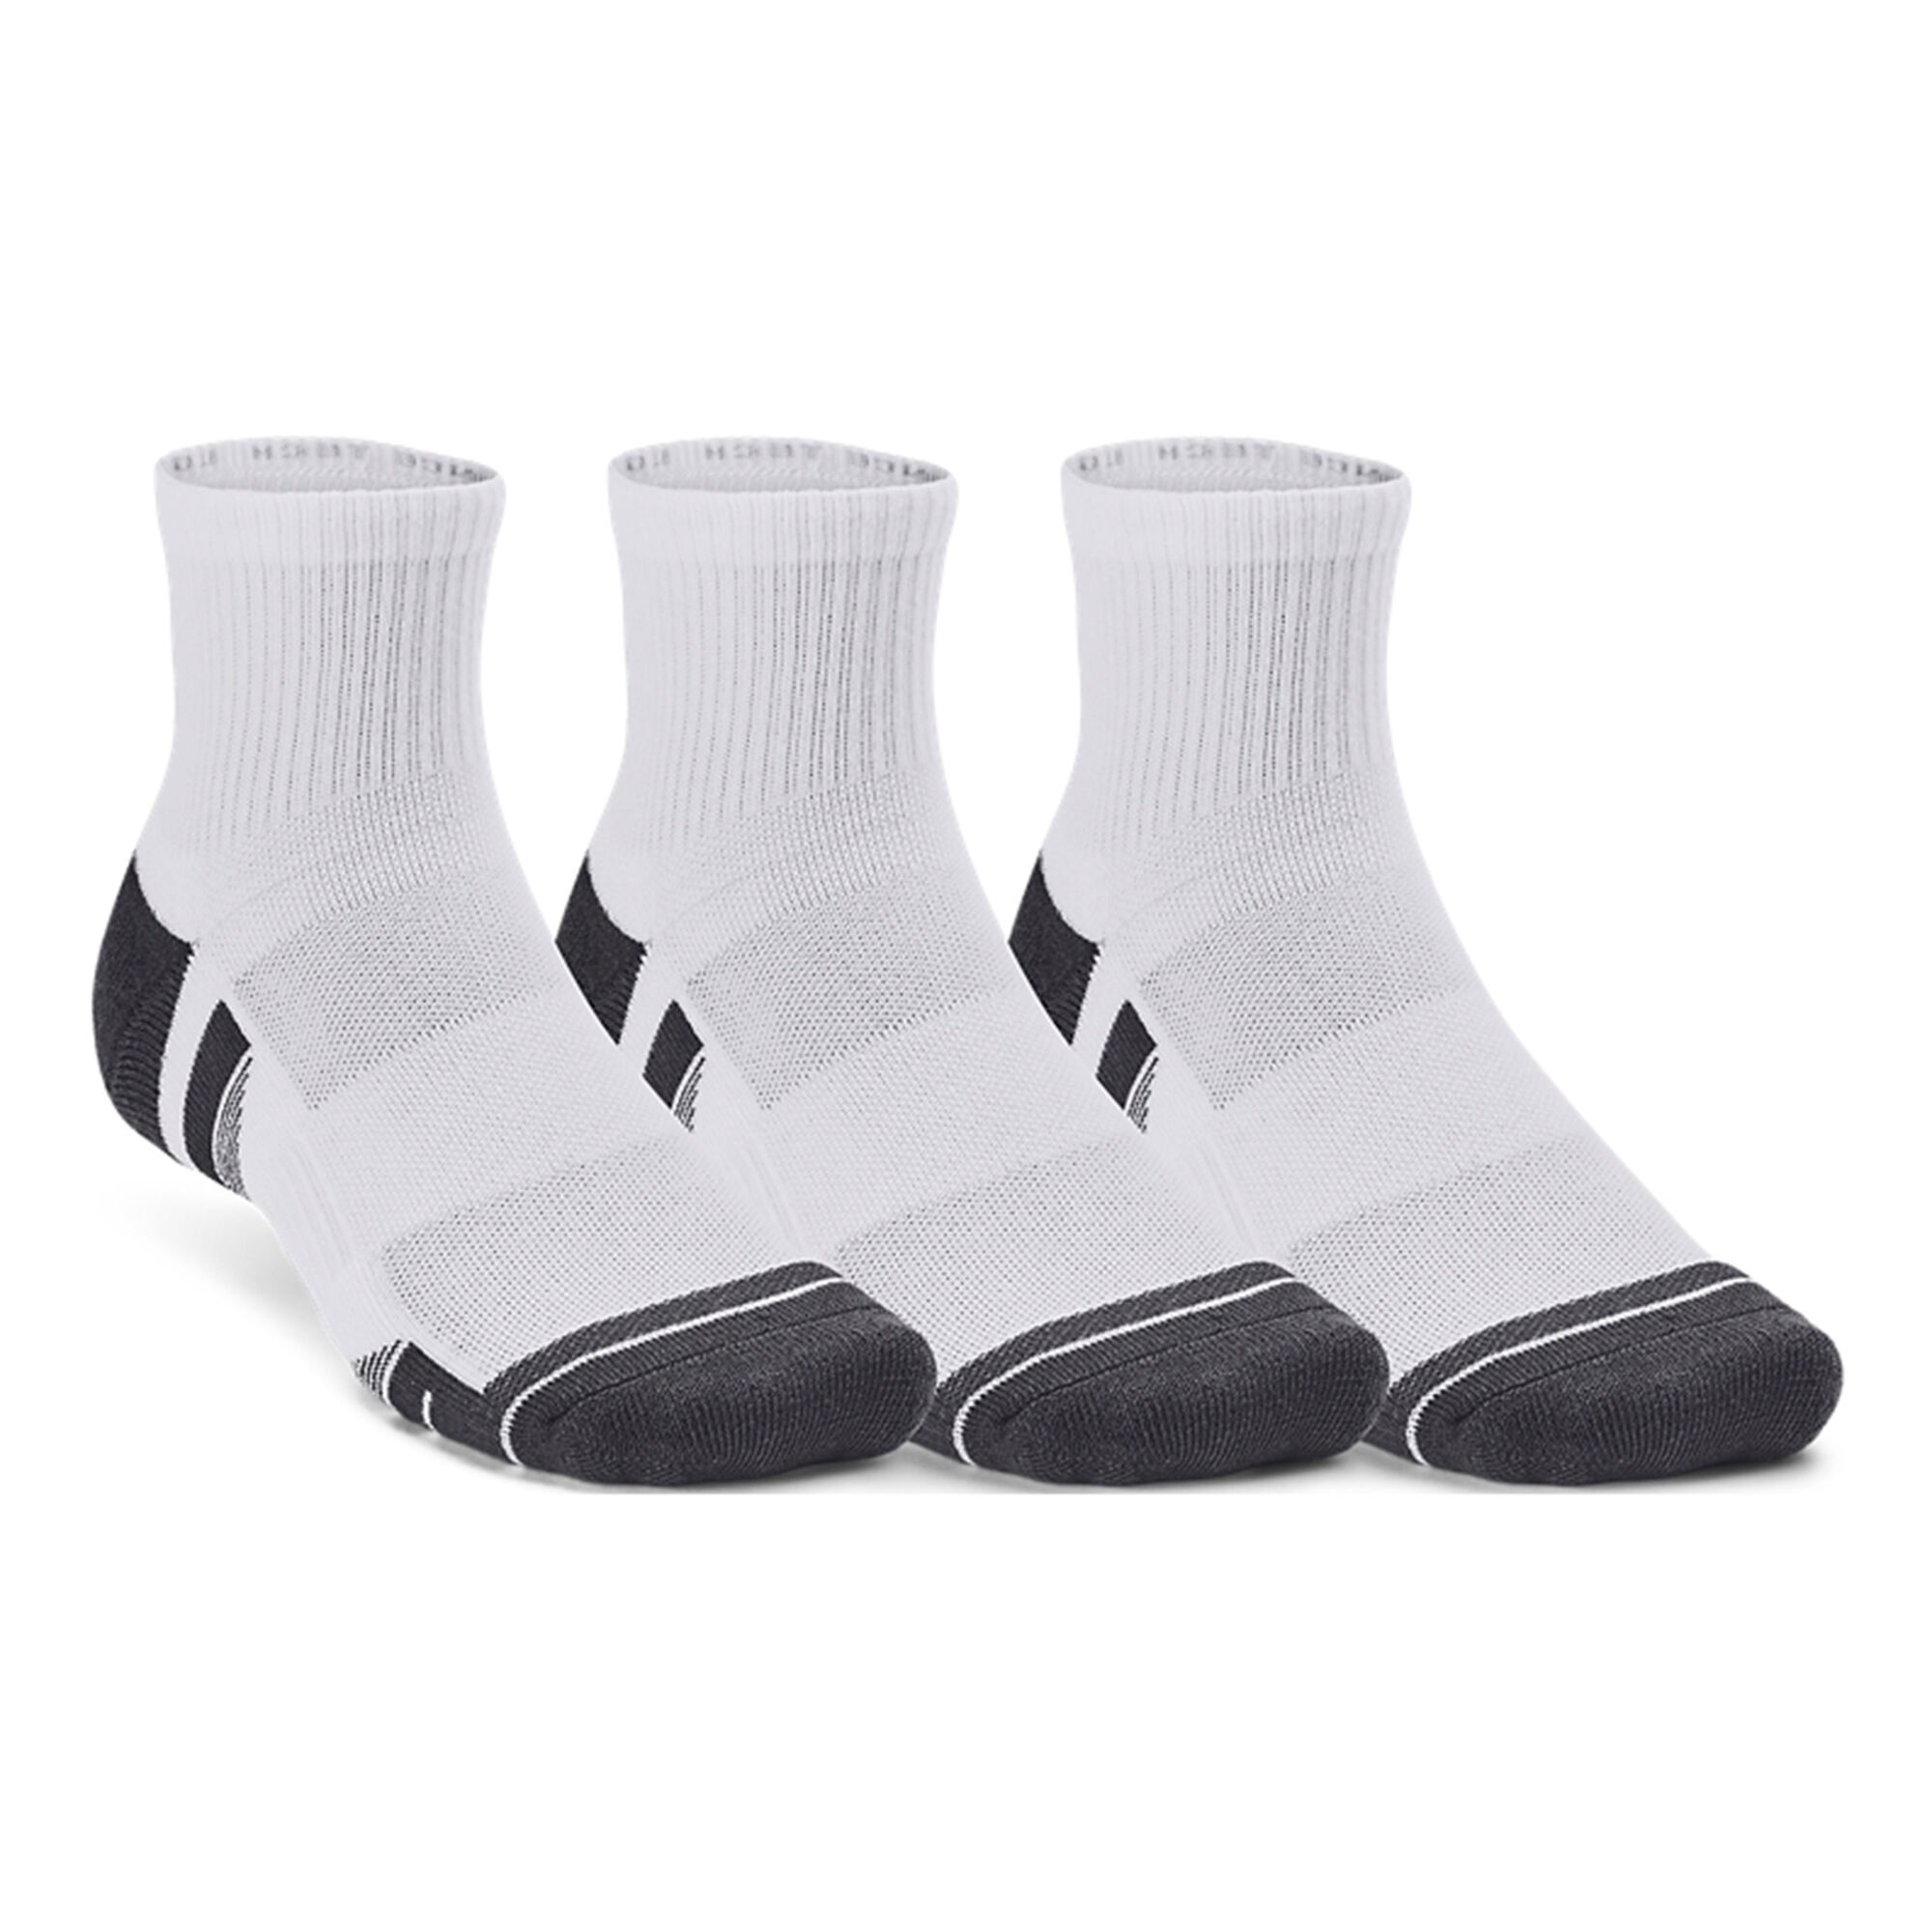 Chaussettes tennis Adidas Crew Tech - Coloris blanc ou noir